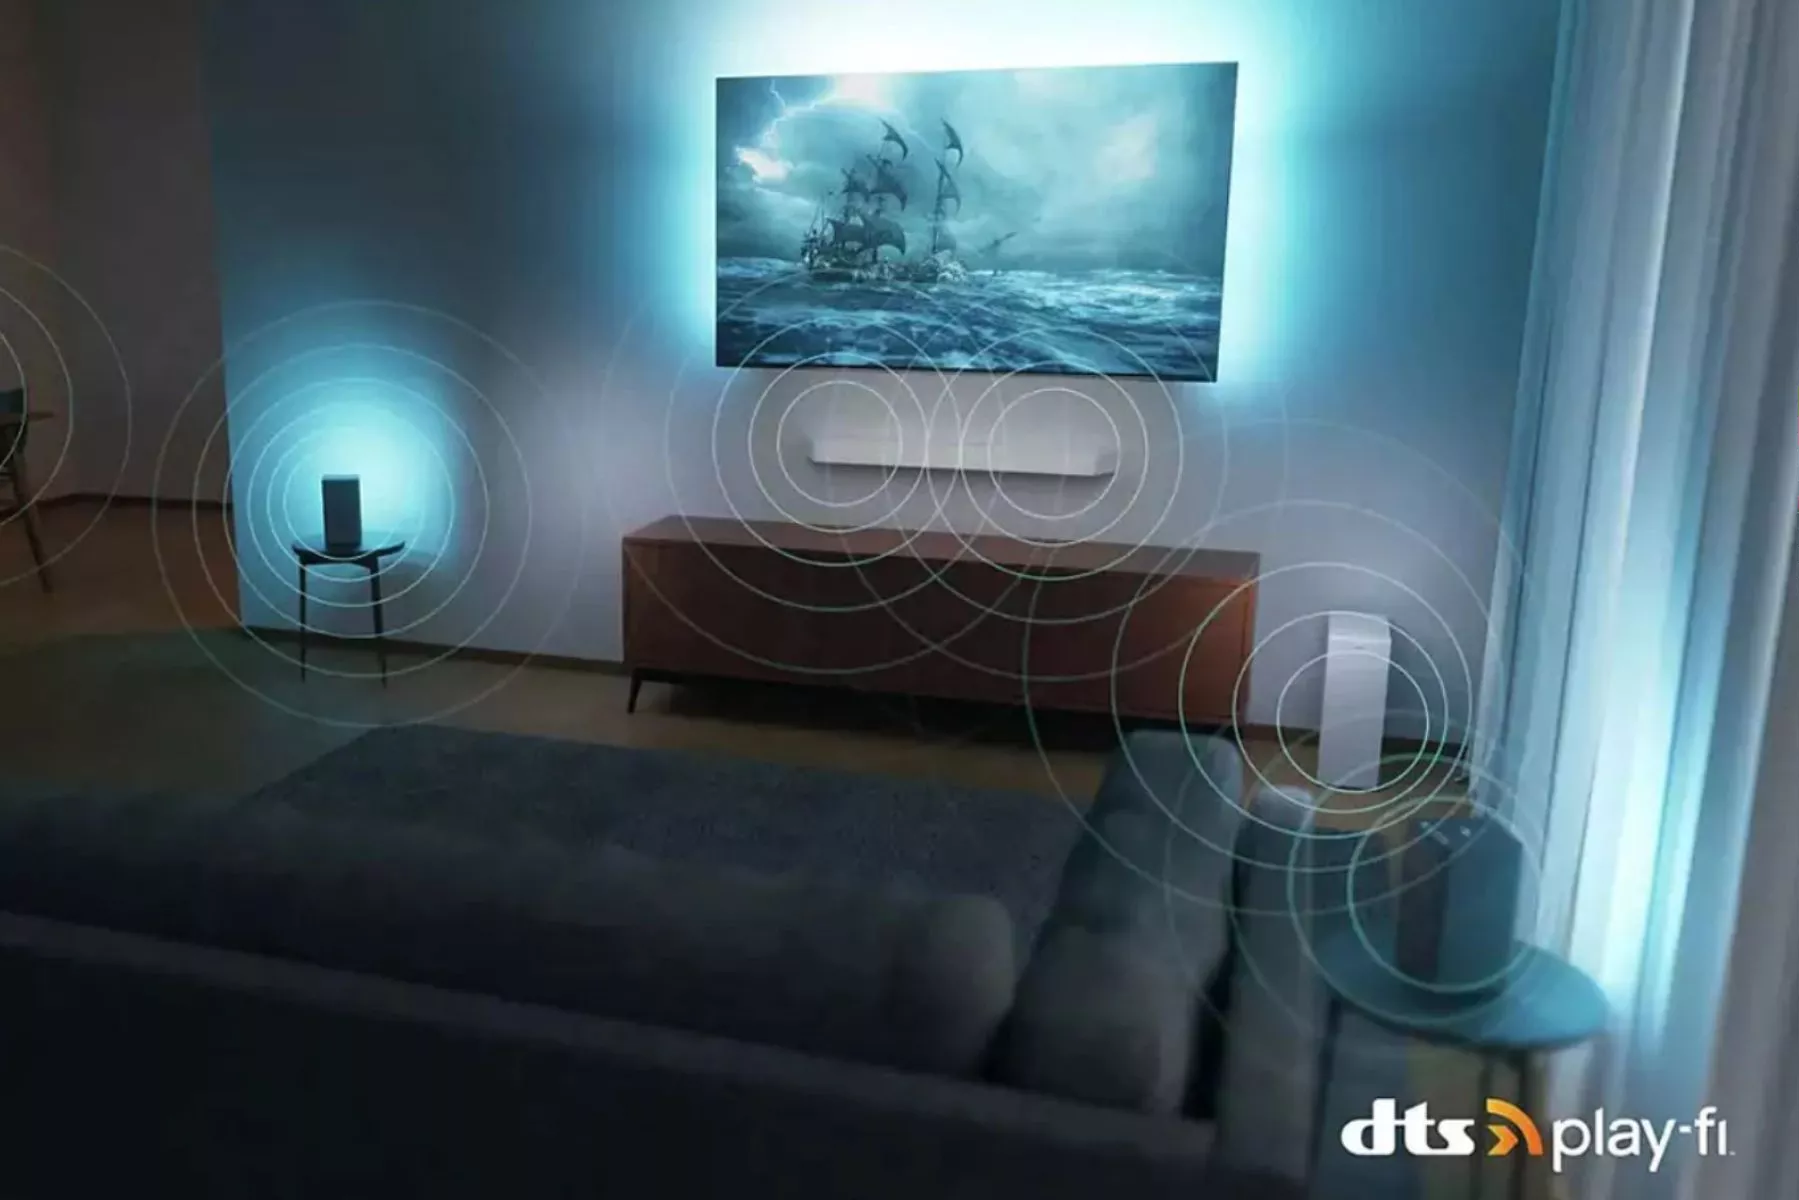 Bezdrôtový domáci systém Philips s technológiou DTS Play-Fi.